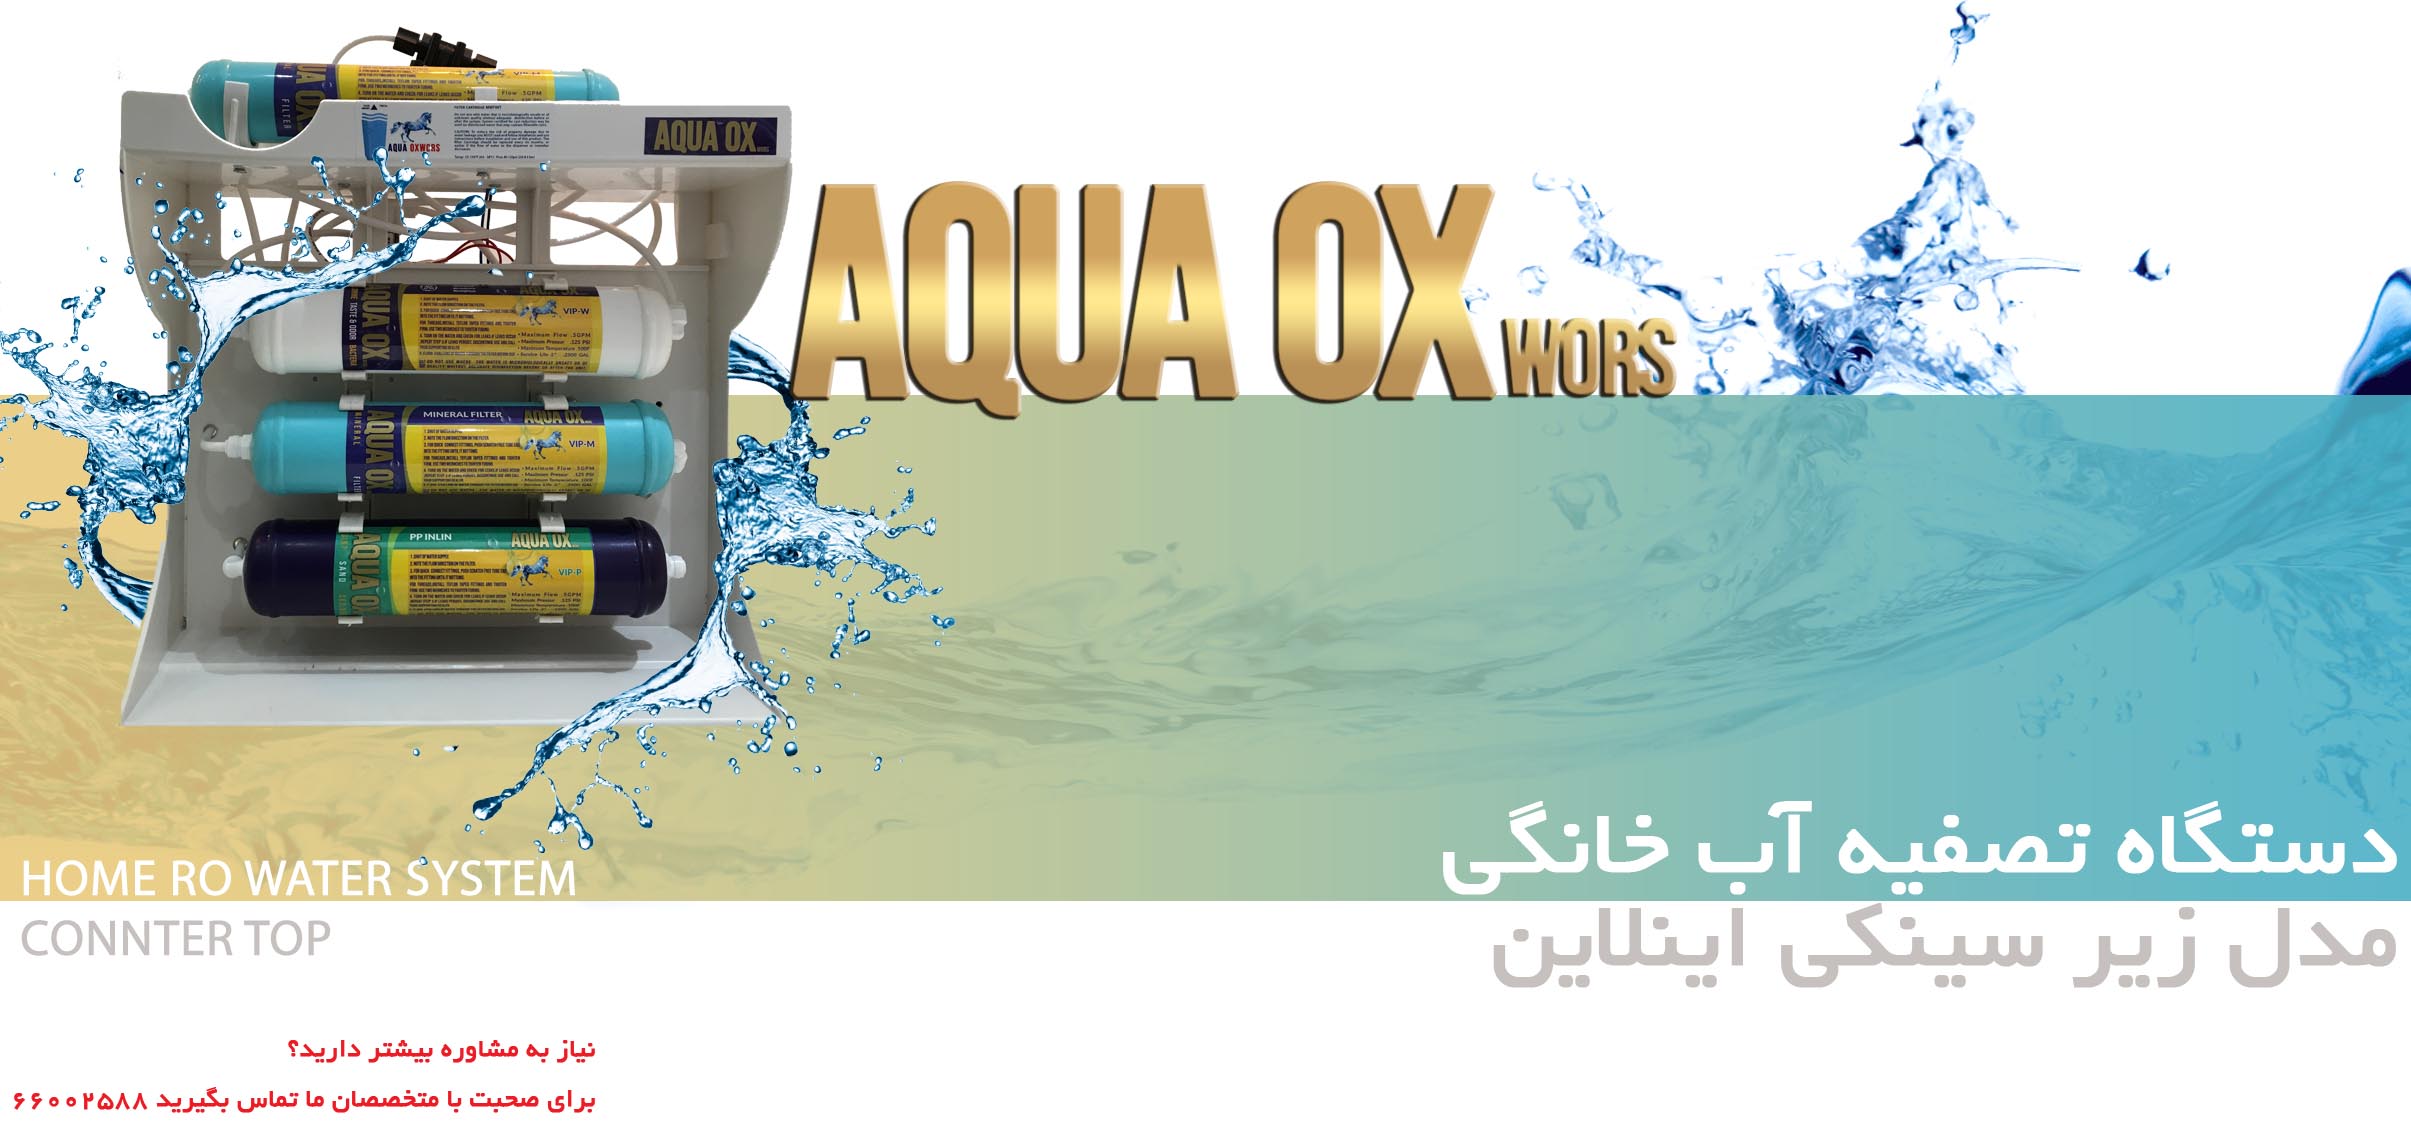 دستگاه تصفیه آب 7مرحله اینلاین AQUA OXWORS